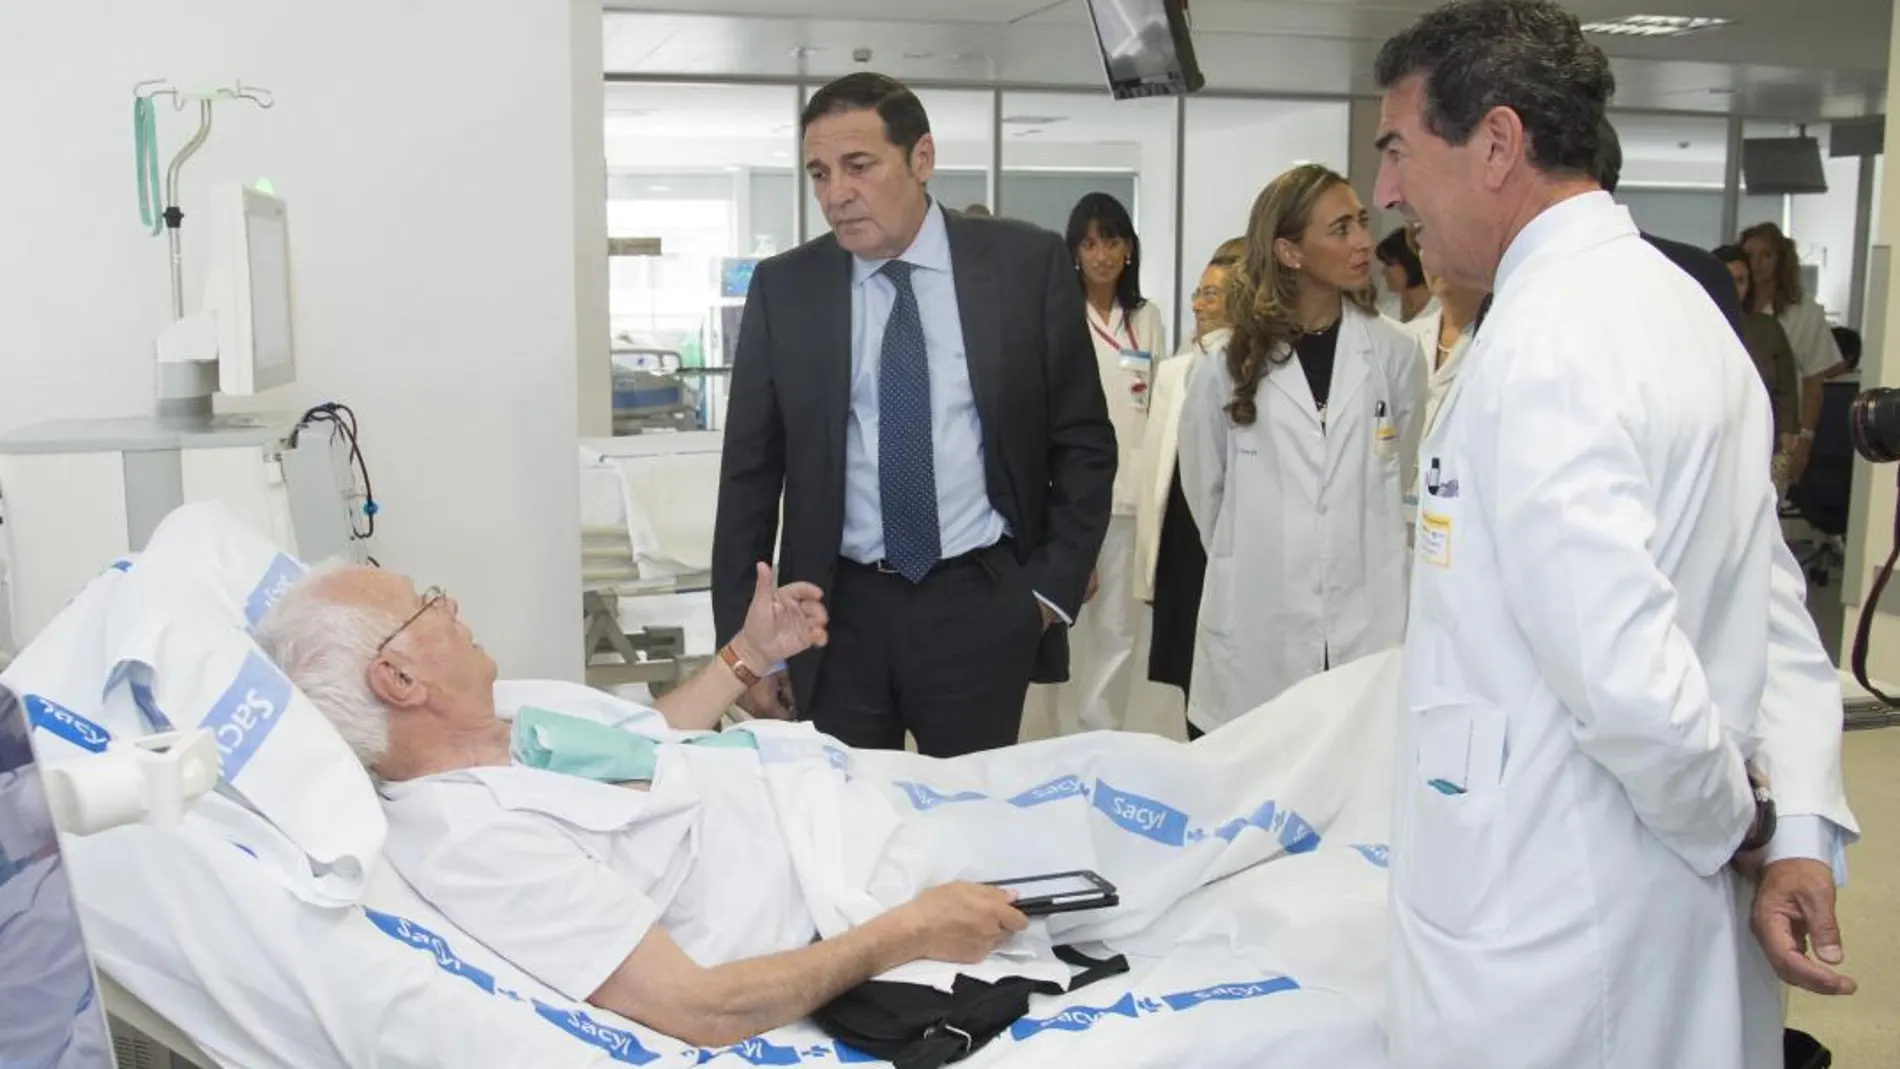 El consejero de Sanidad, Antonio María Sáez Aguado, dialoga con un paciente, durante una reciente visita al Complejo Hospitalario de Burgos